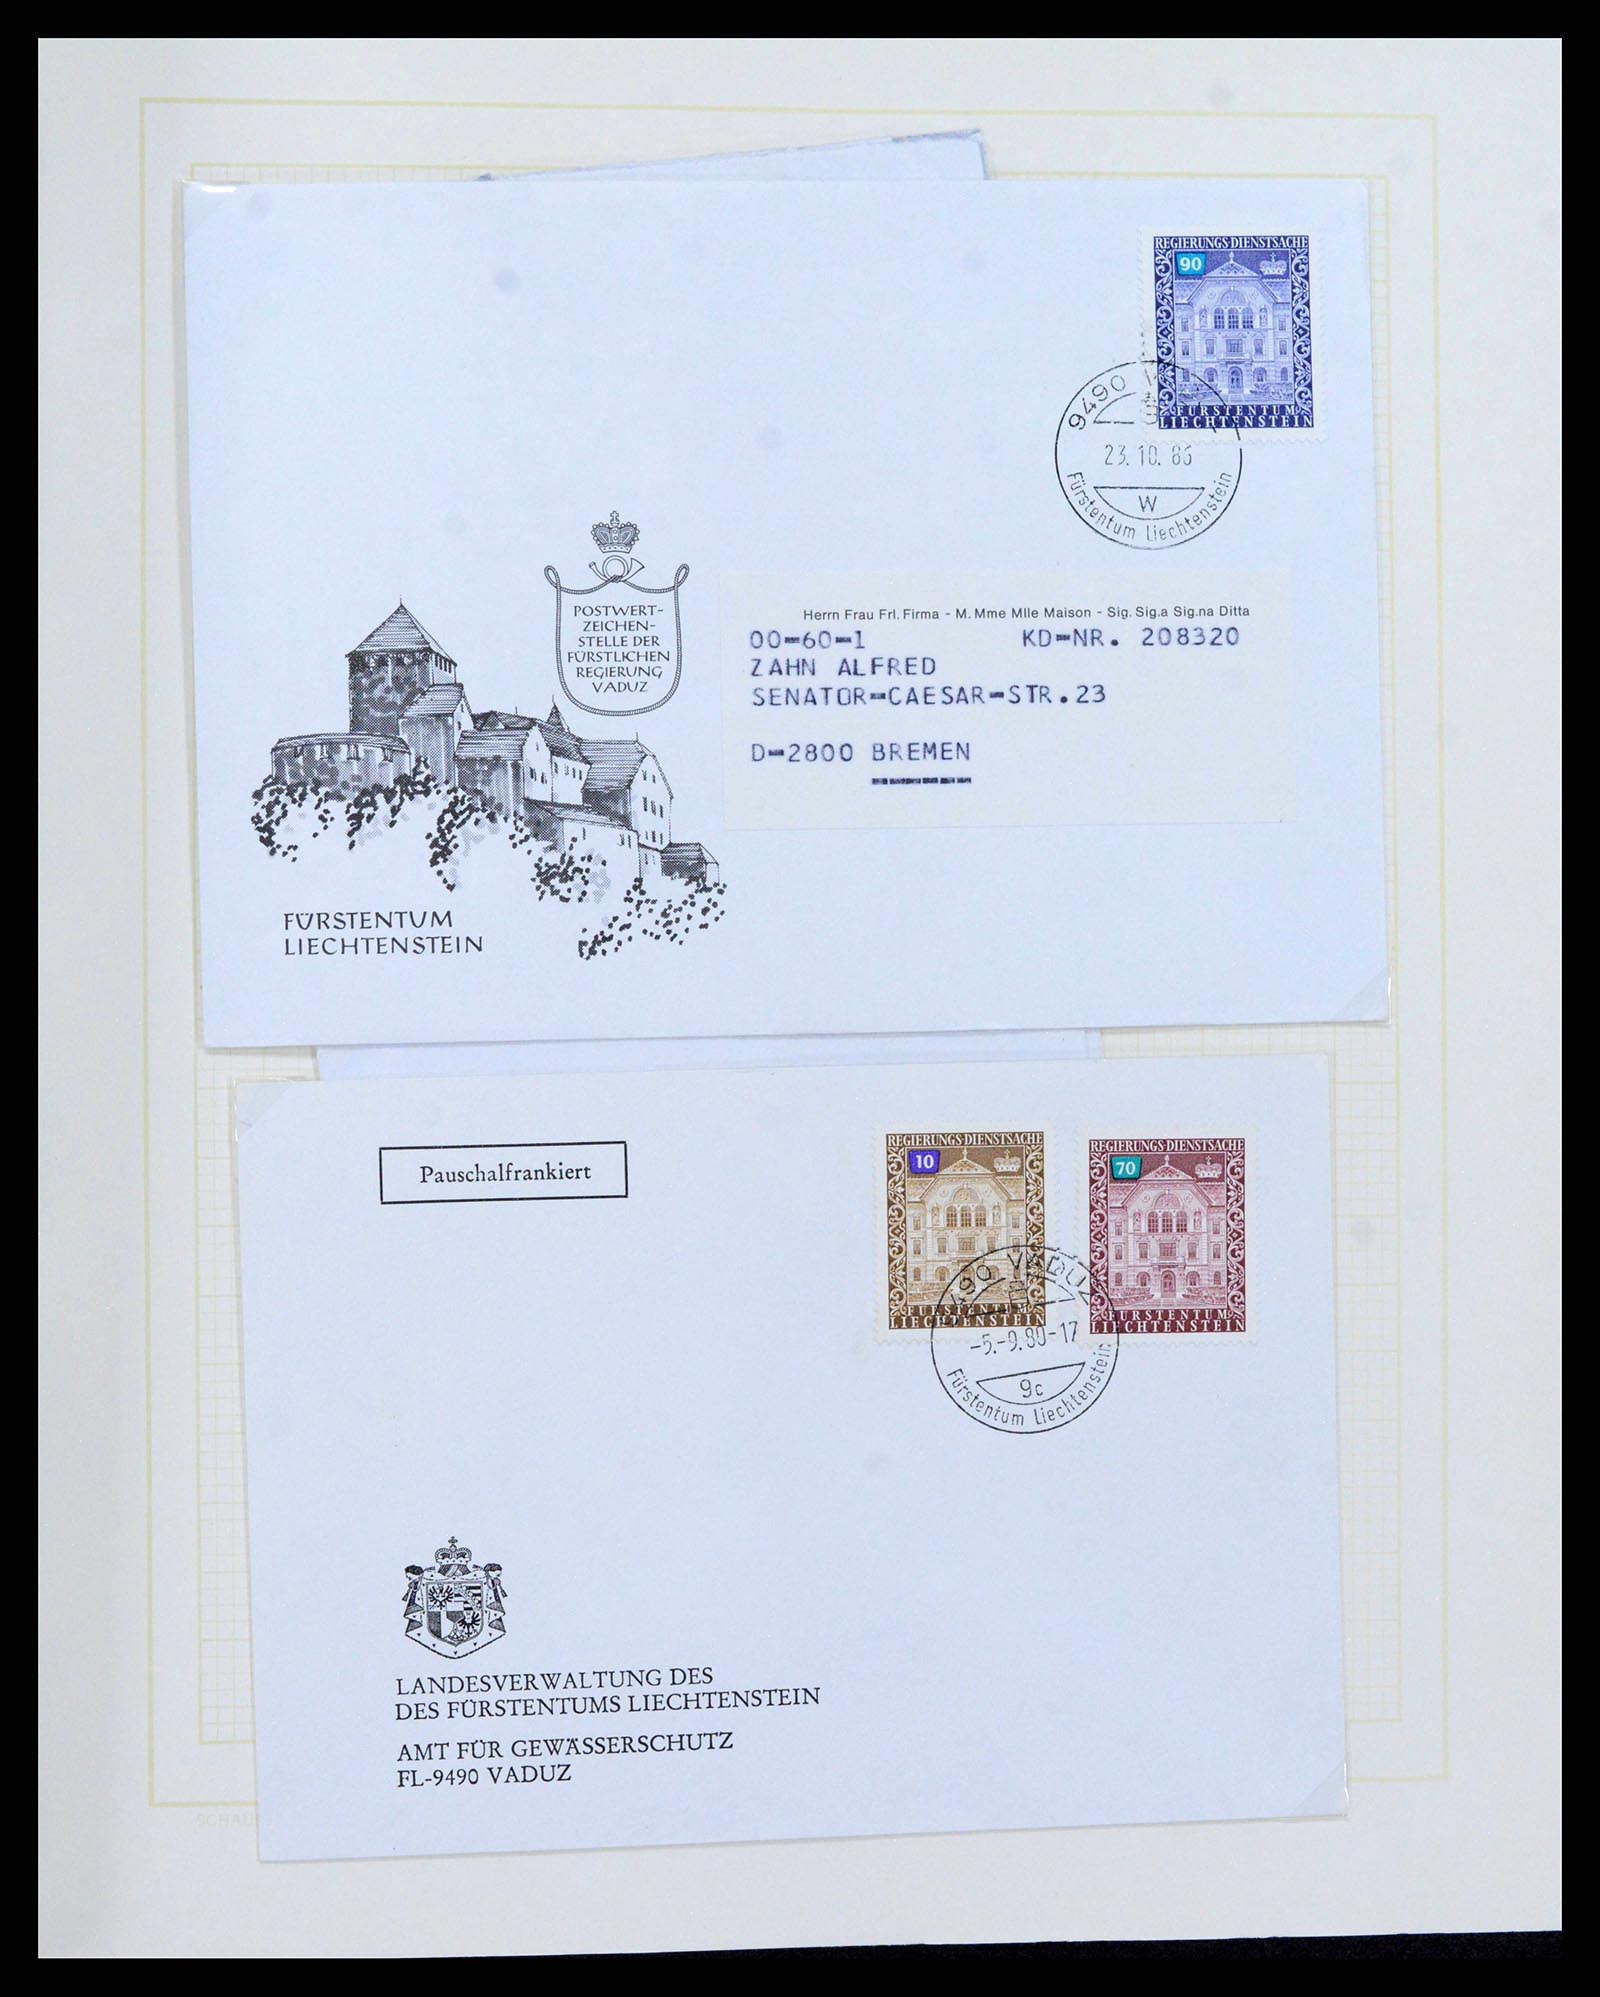 38204 0047 - Stamp collection 38204 Liechtenstein service covers 1932-1989.